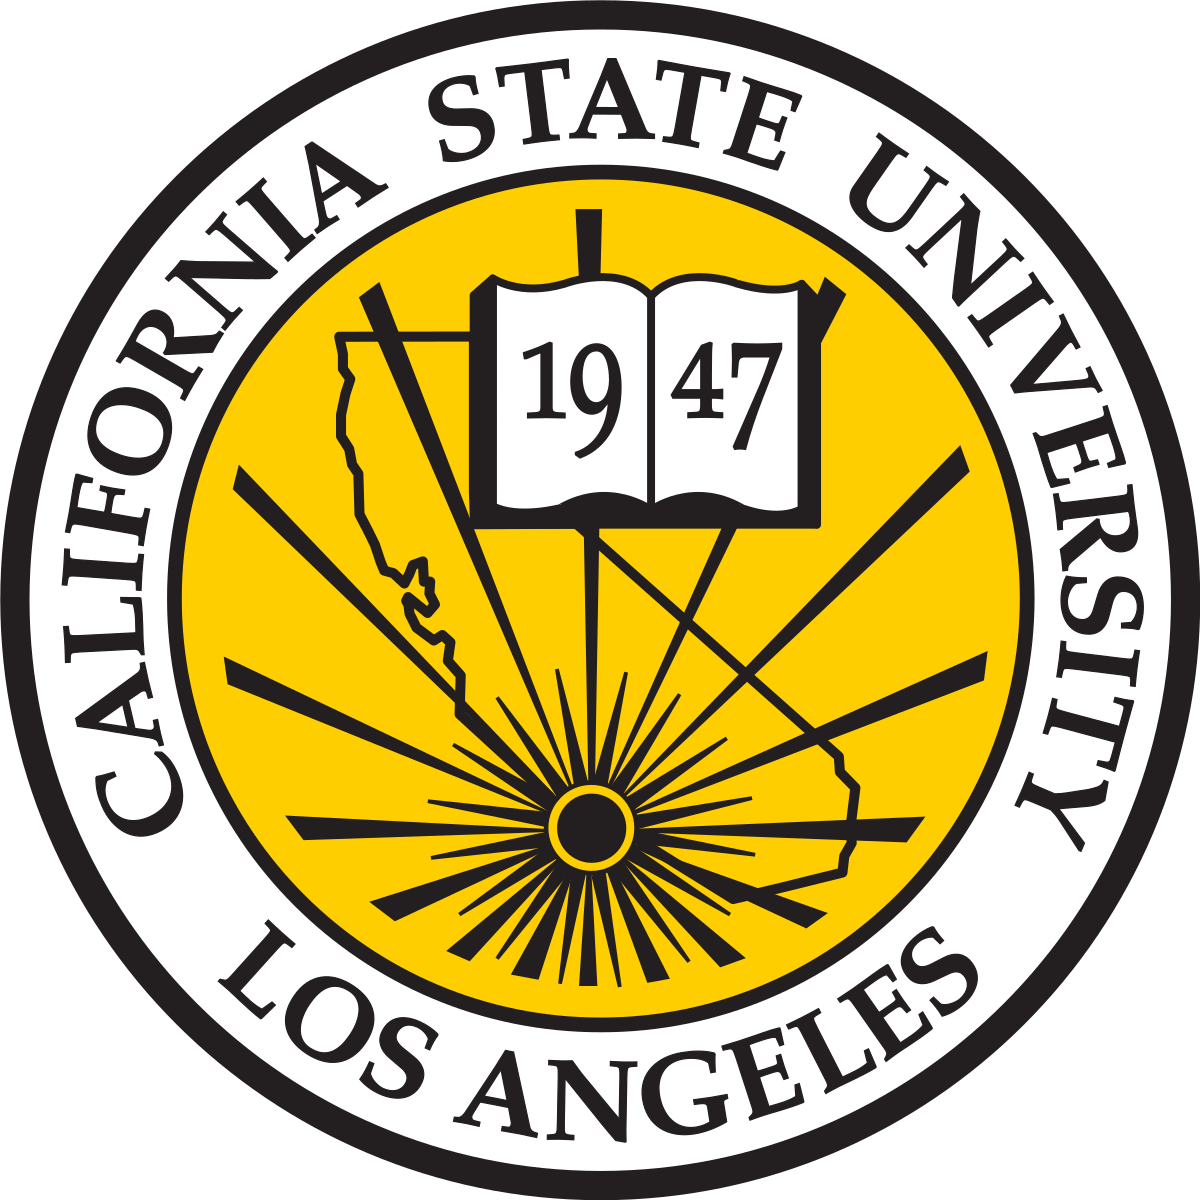 California Golden Seals - Wikipedia